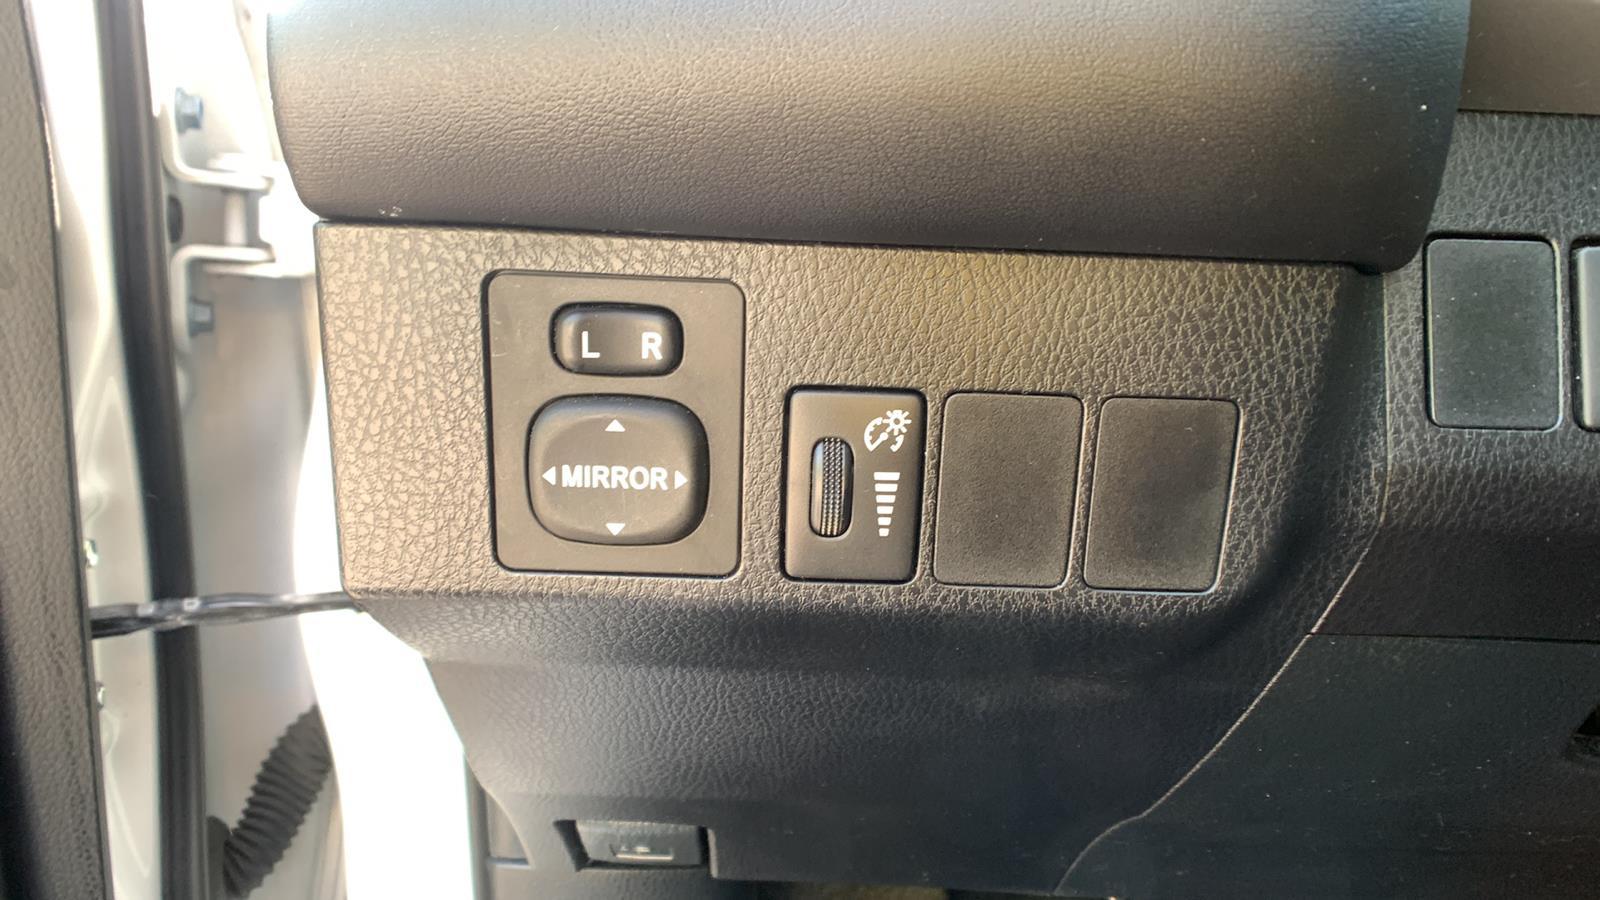 2016 Toyota RAV4 Hybrid Sport Utility